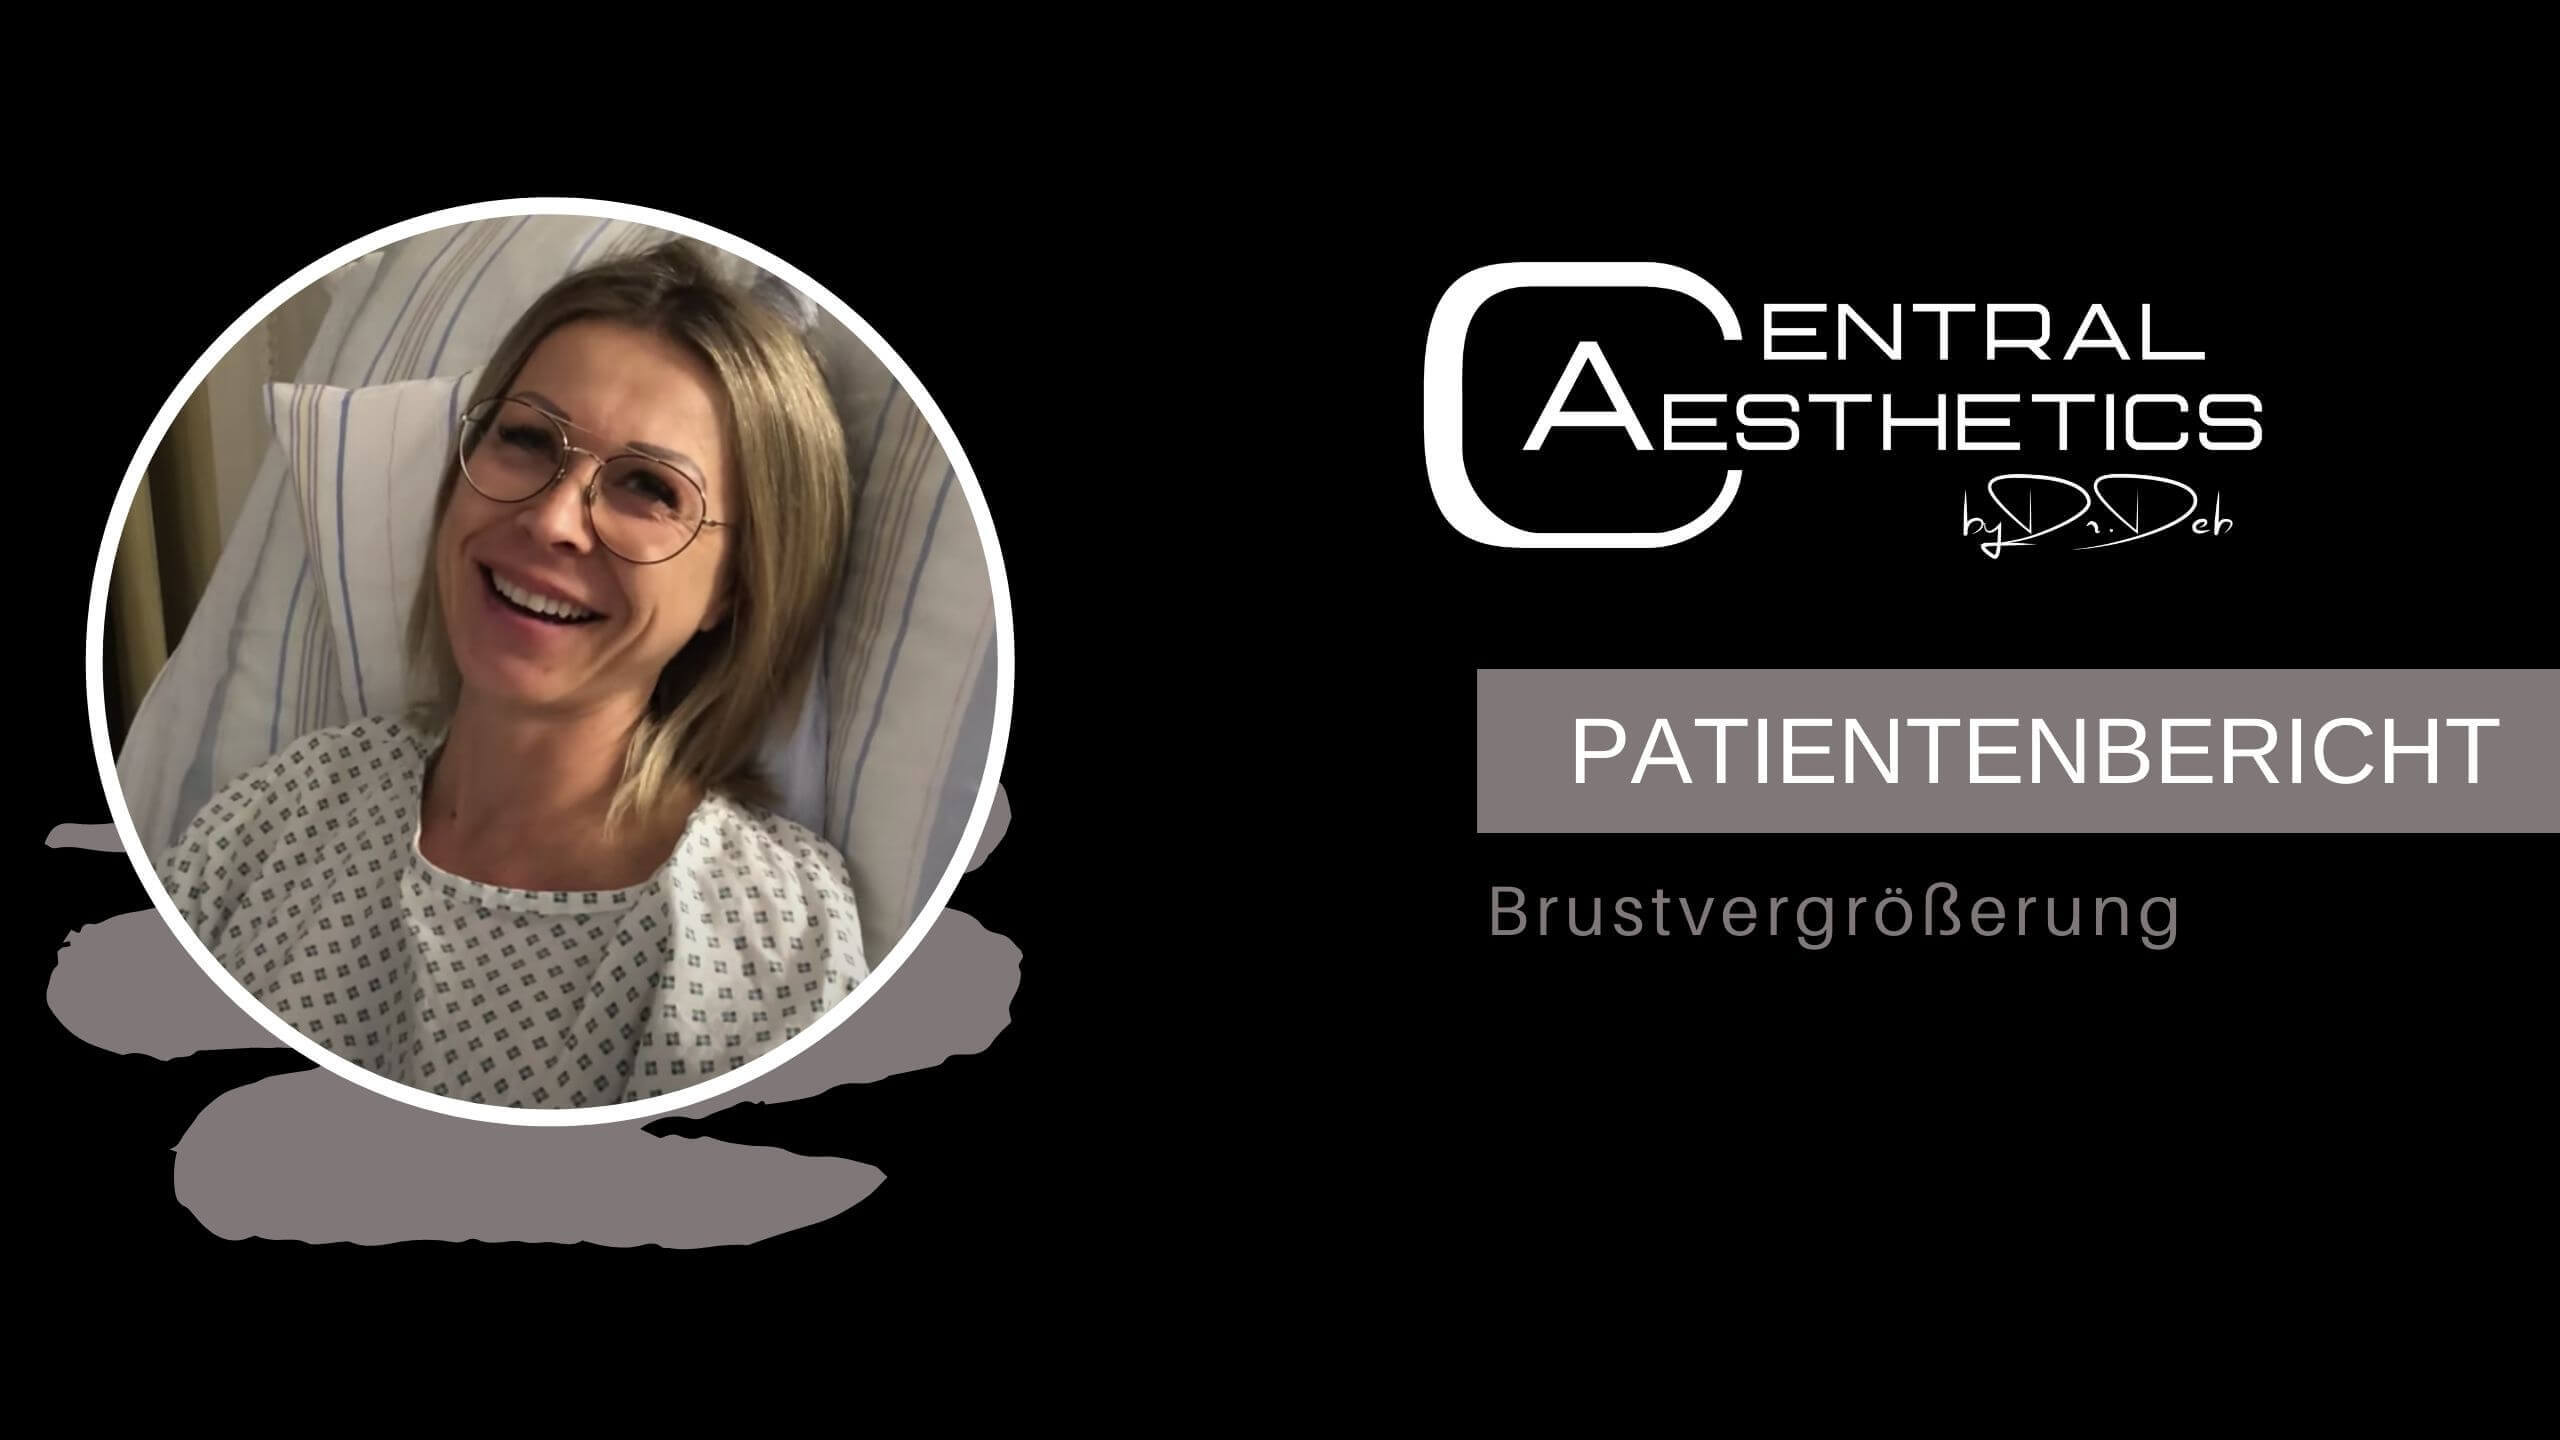 Video Brustvergrößerung Patientenbericht, Dr. Deb, Central Aesthetics, Plastische Chirurgie Frankfurt